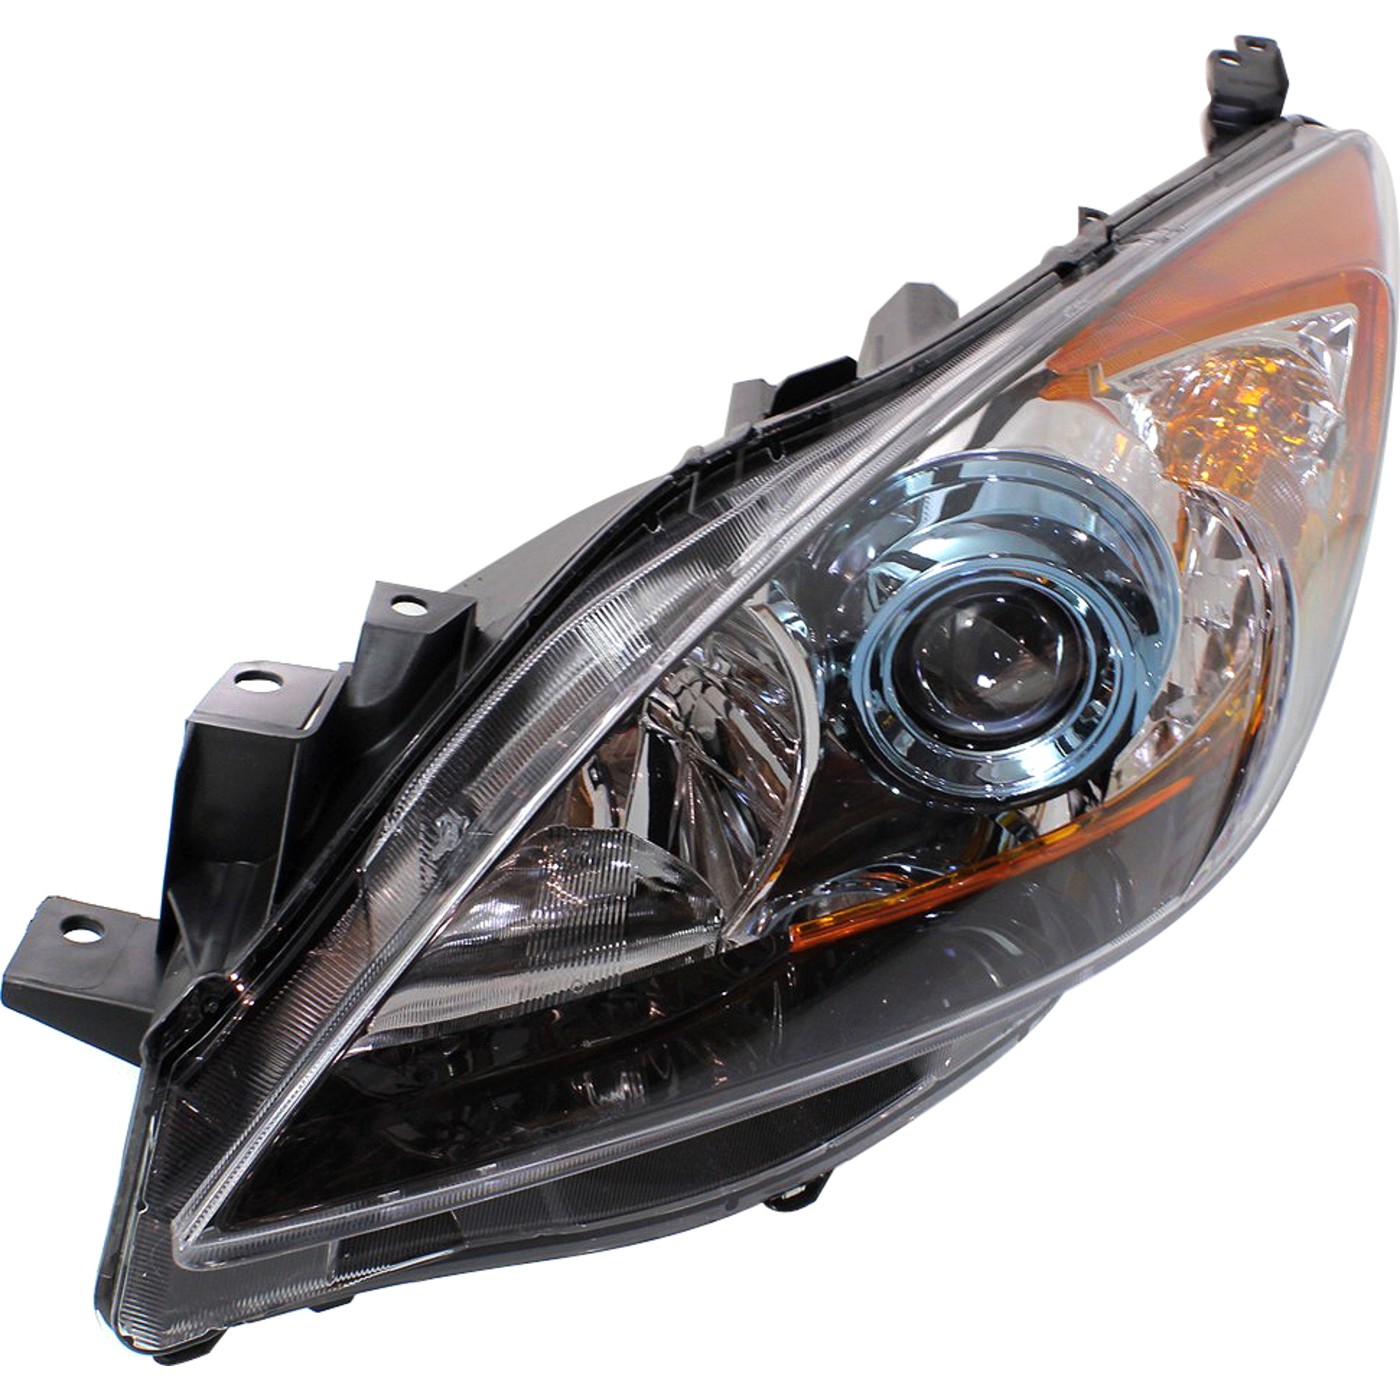 Headlight For 2012-2013 Mazda 3 Hatchback or Sedan Left With Bulb | eBay